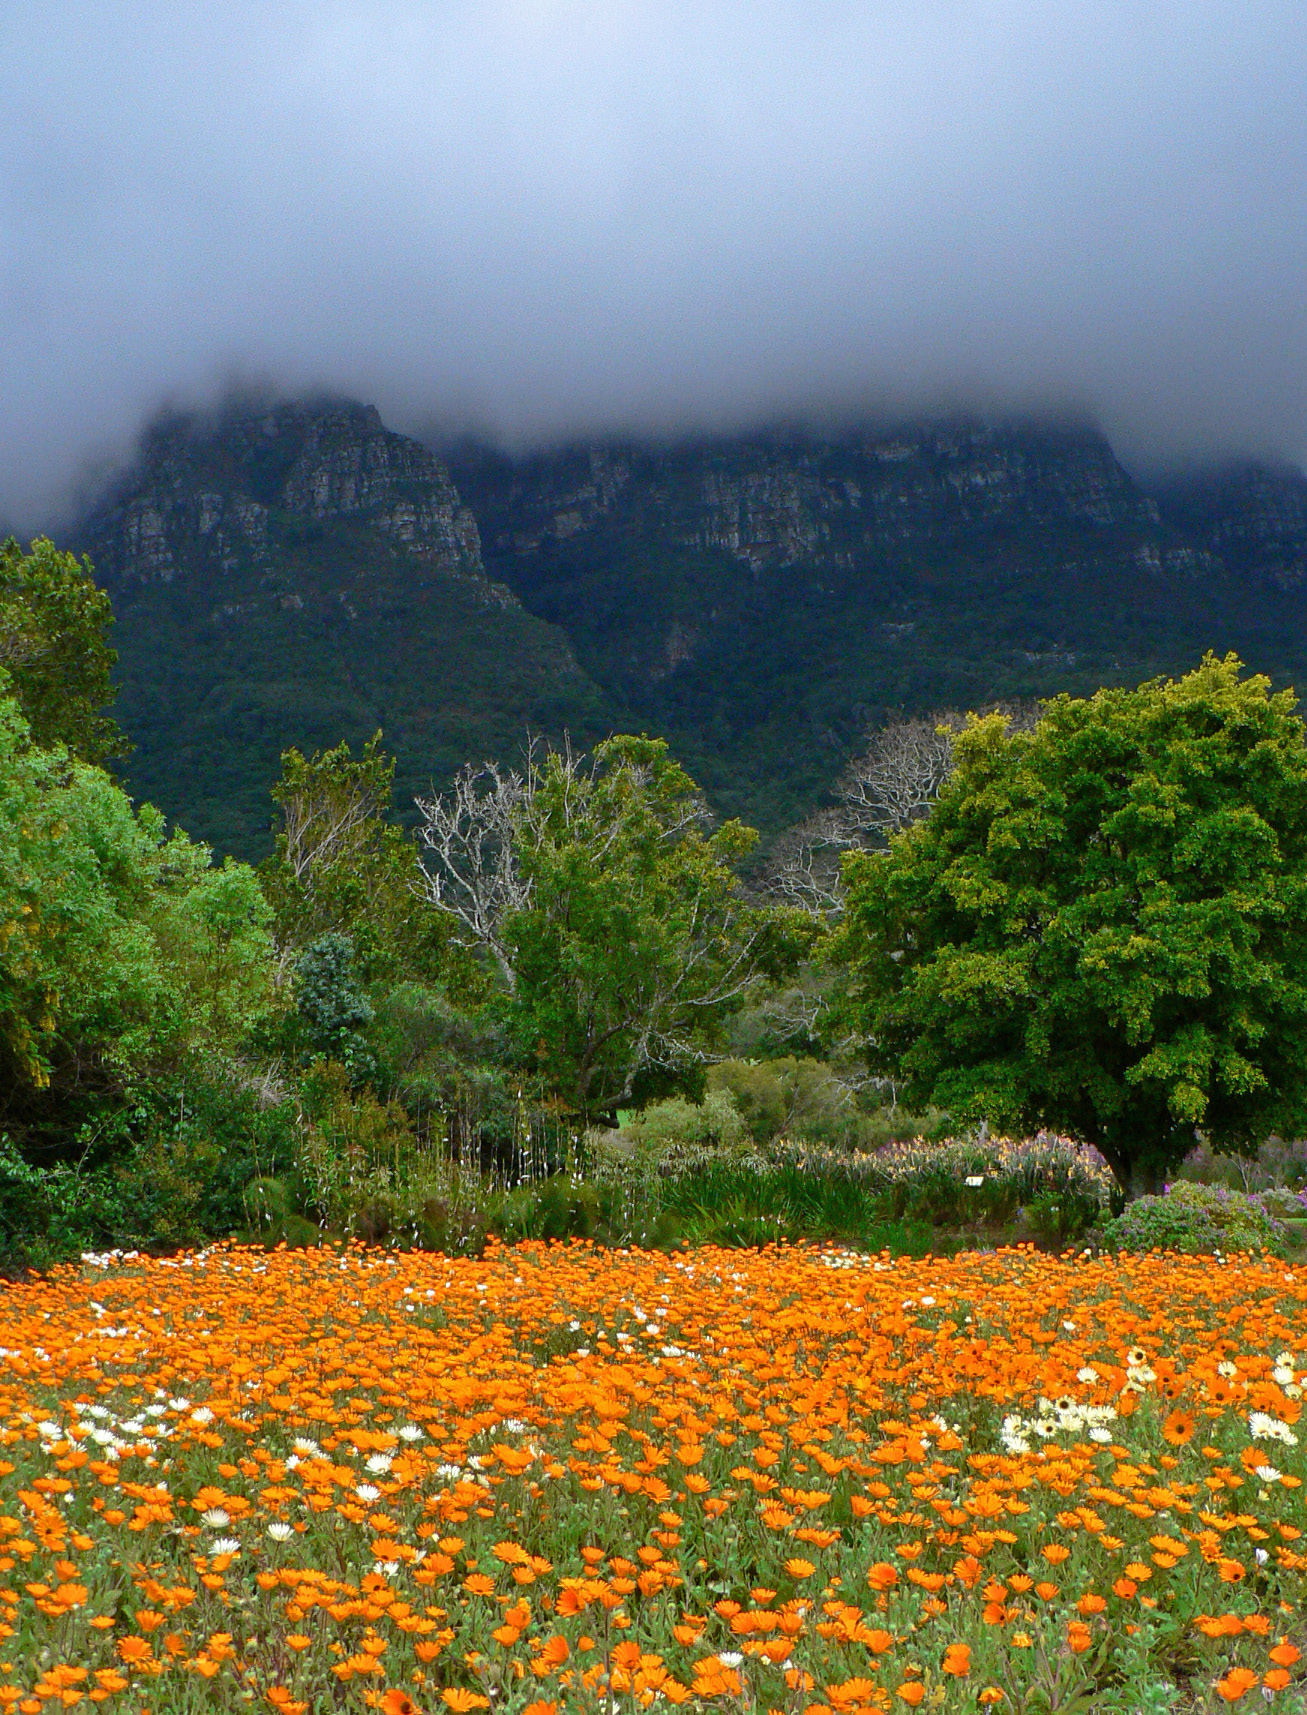 Cape Town, Kirstenbosch Botanical Garden, Western Cape, South Africa